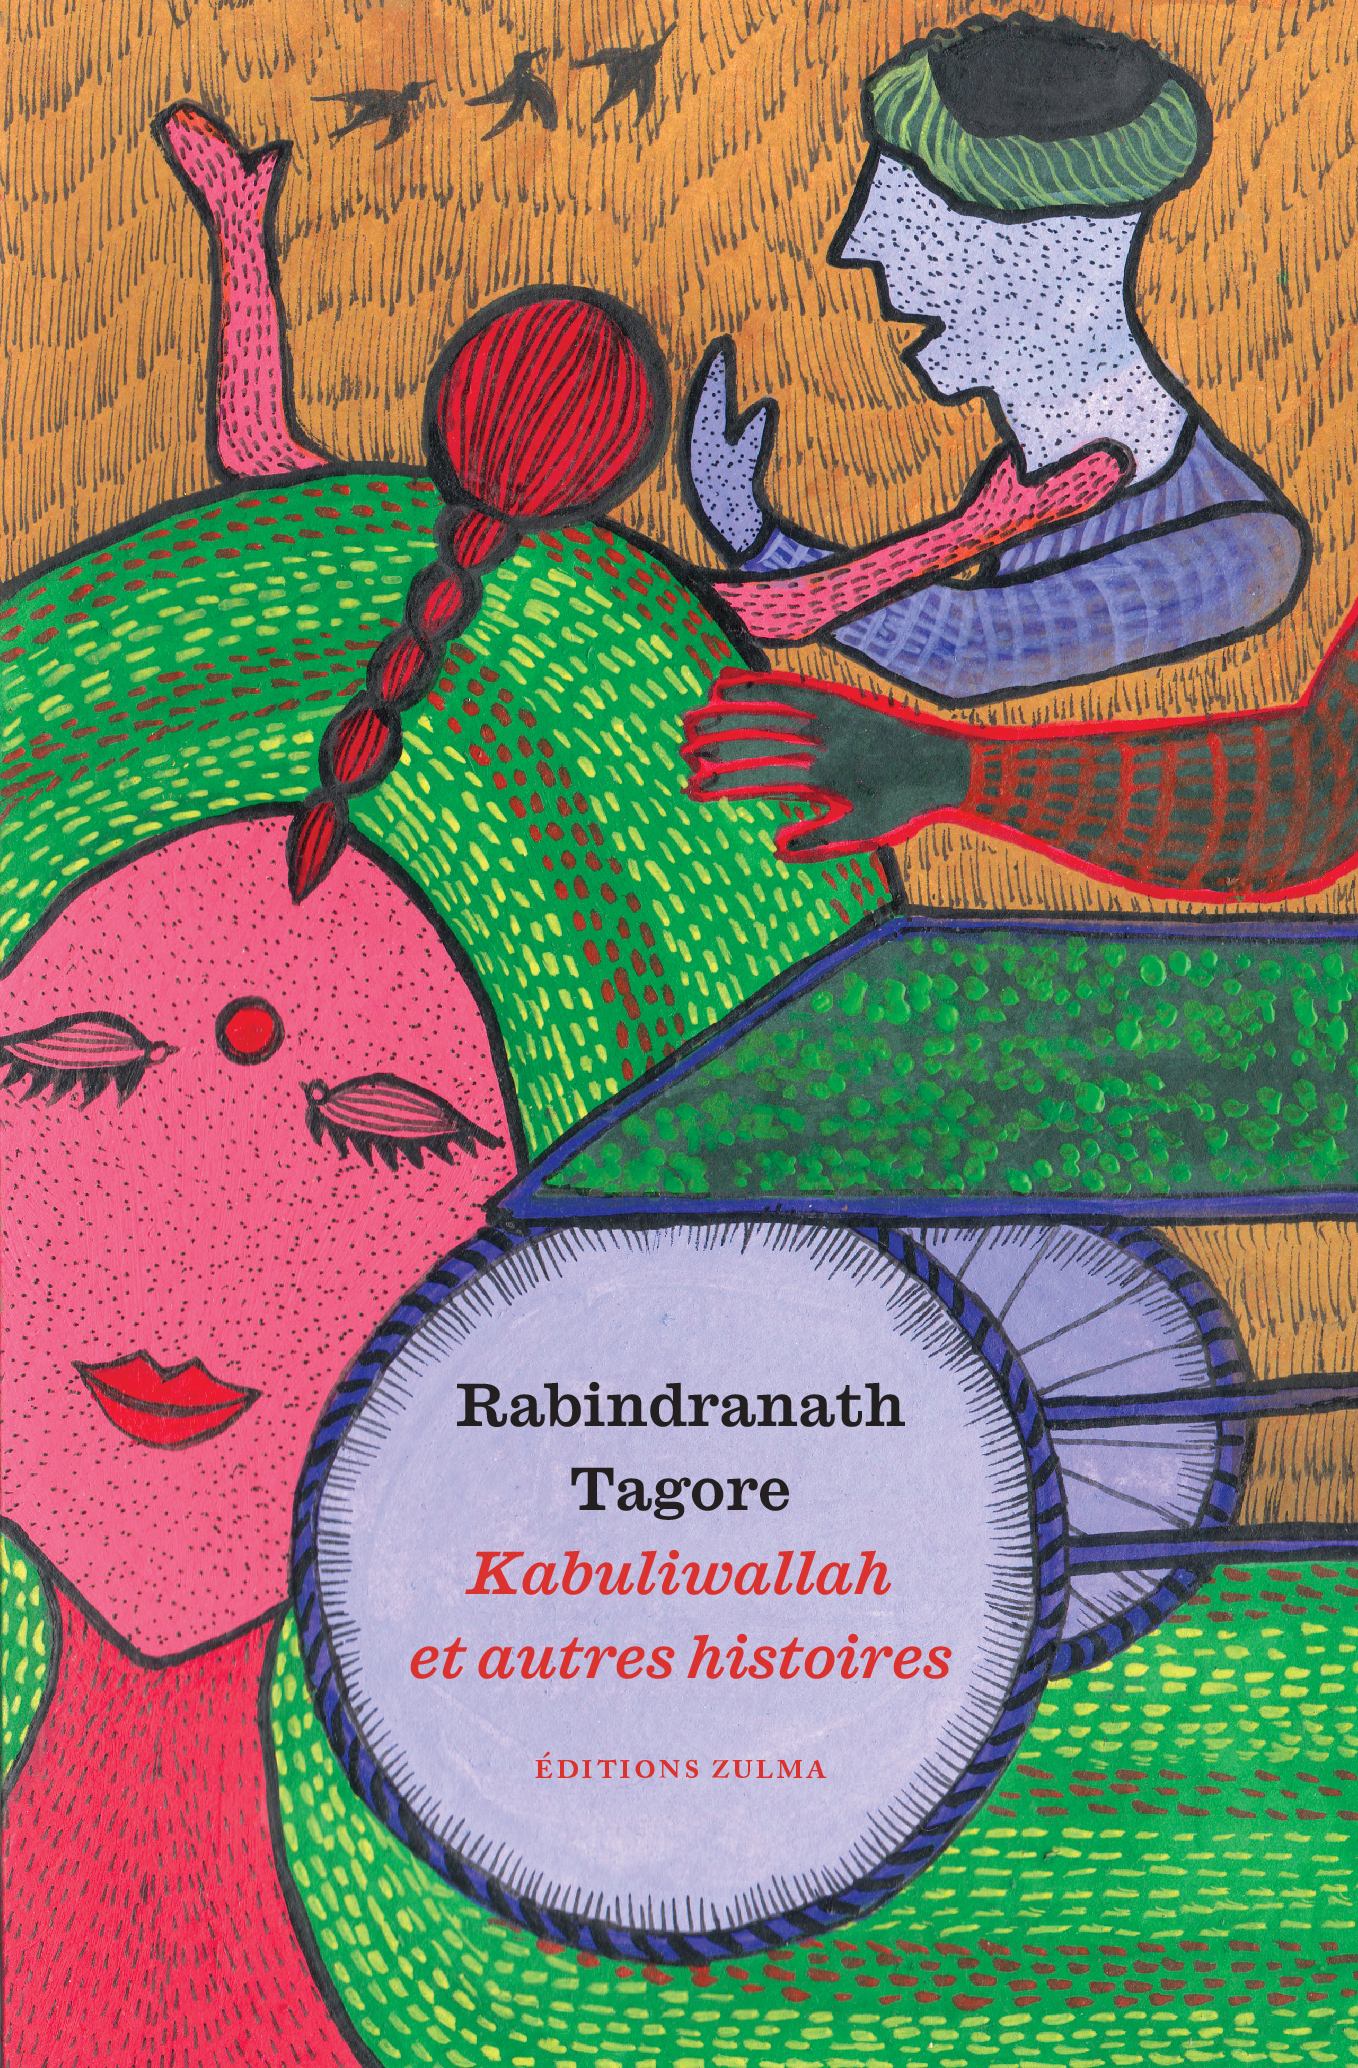 Kabuliwallah et autres histoires de Rabindranath Tagore est réédité.